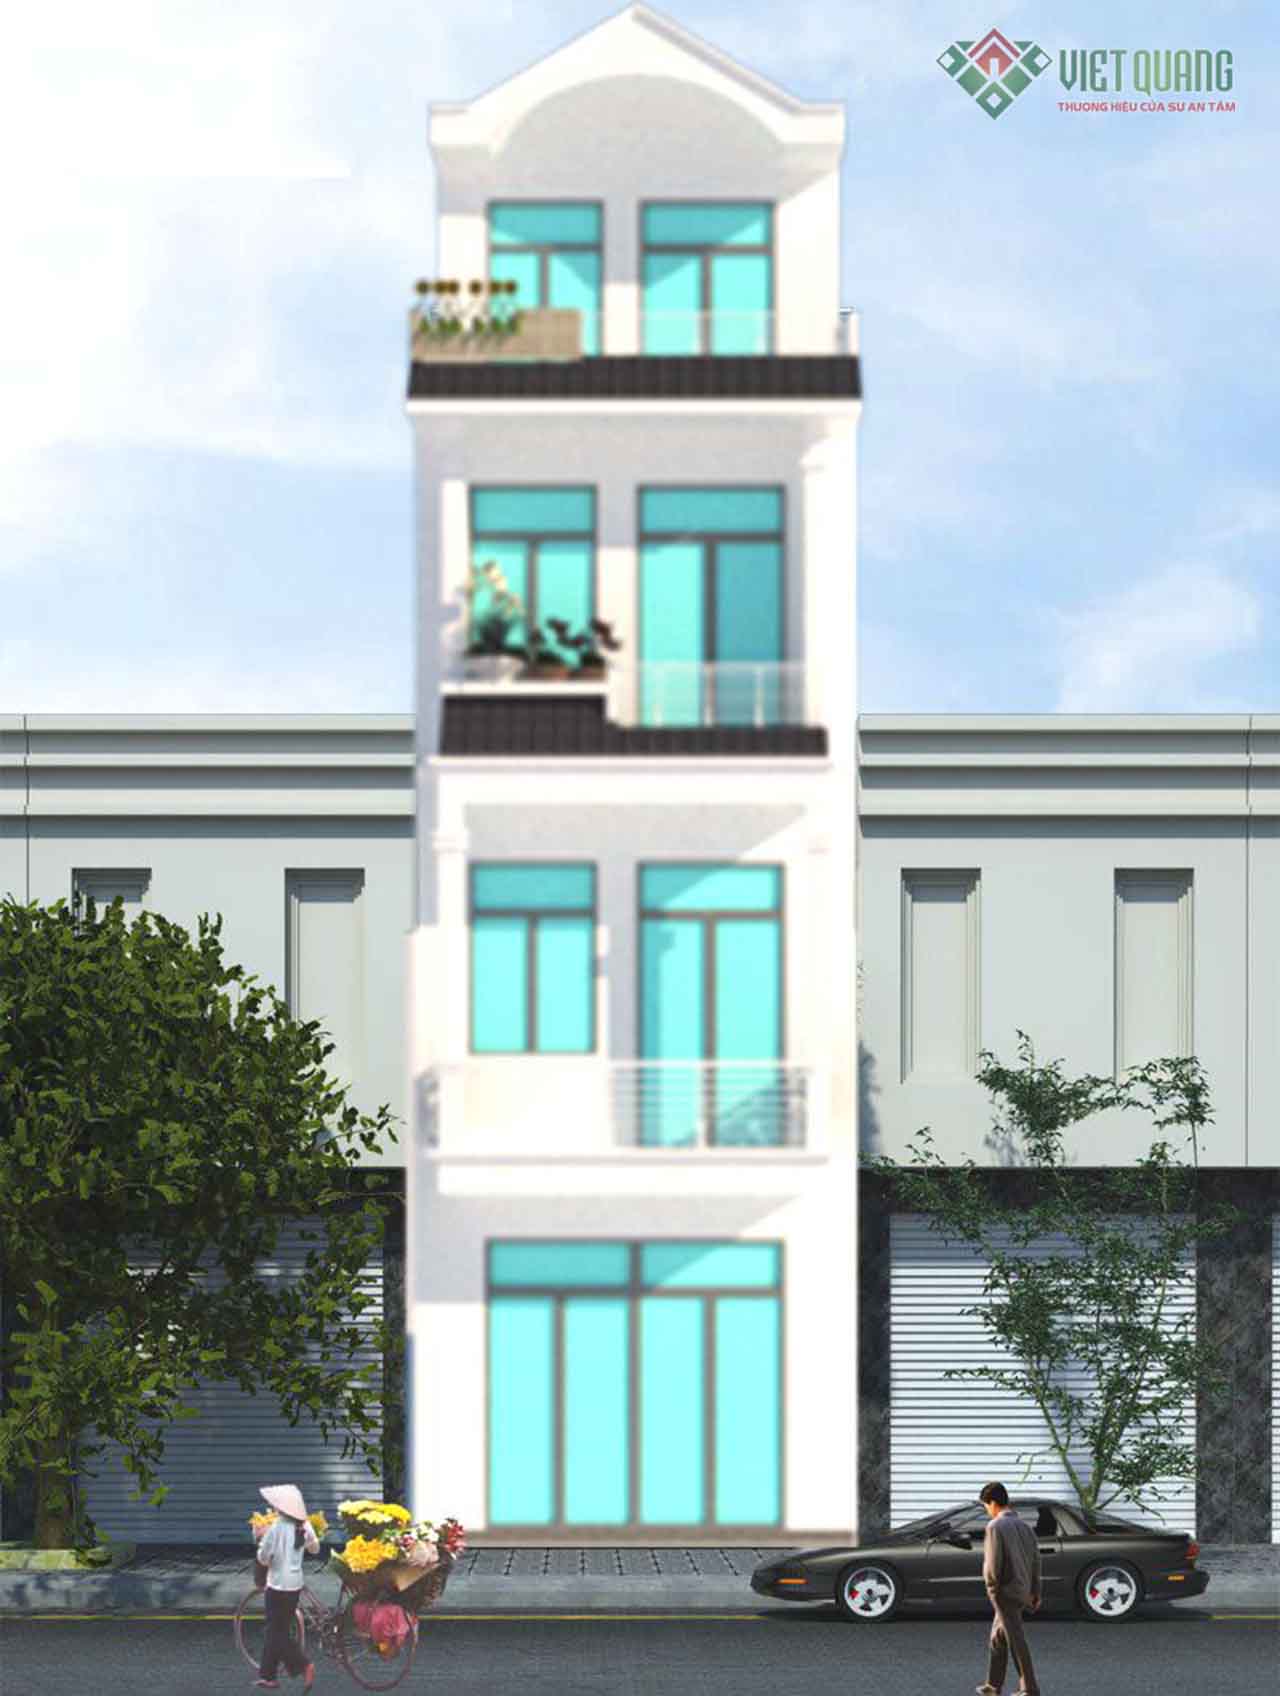 Việt Quang Group đã thi côn xây nhà phố 4 tầng chị Duyên quận Thủ Đức năm 2016. Công trình được chủ nhà hài lòng về chất lượng công trình.